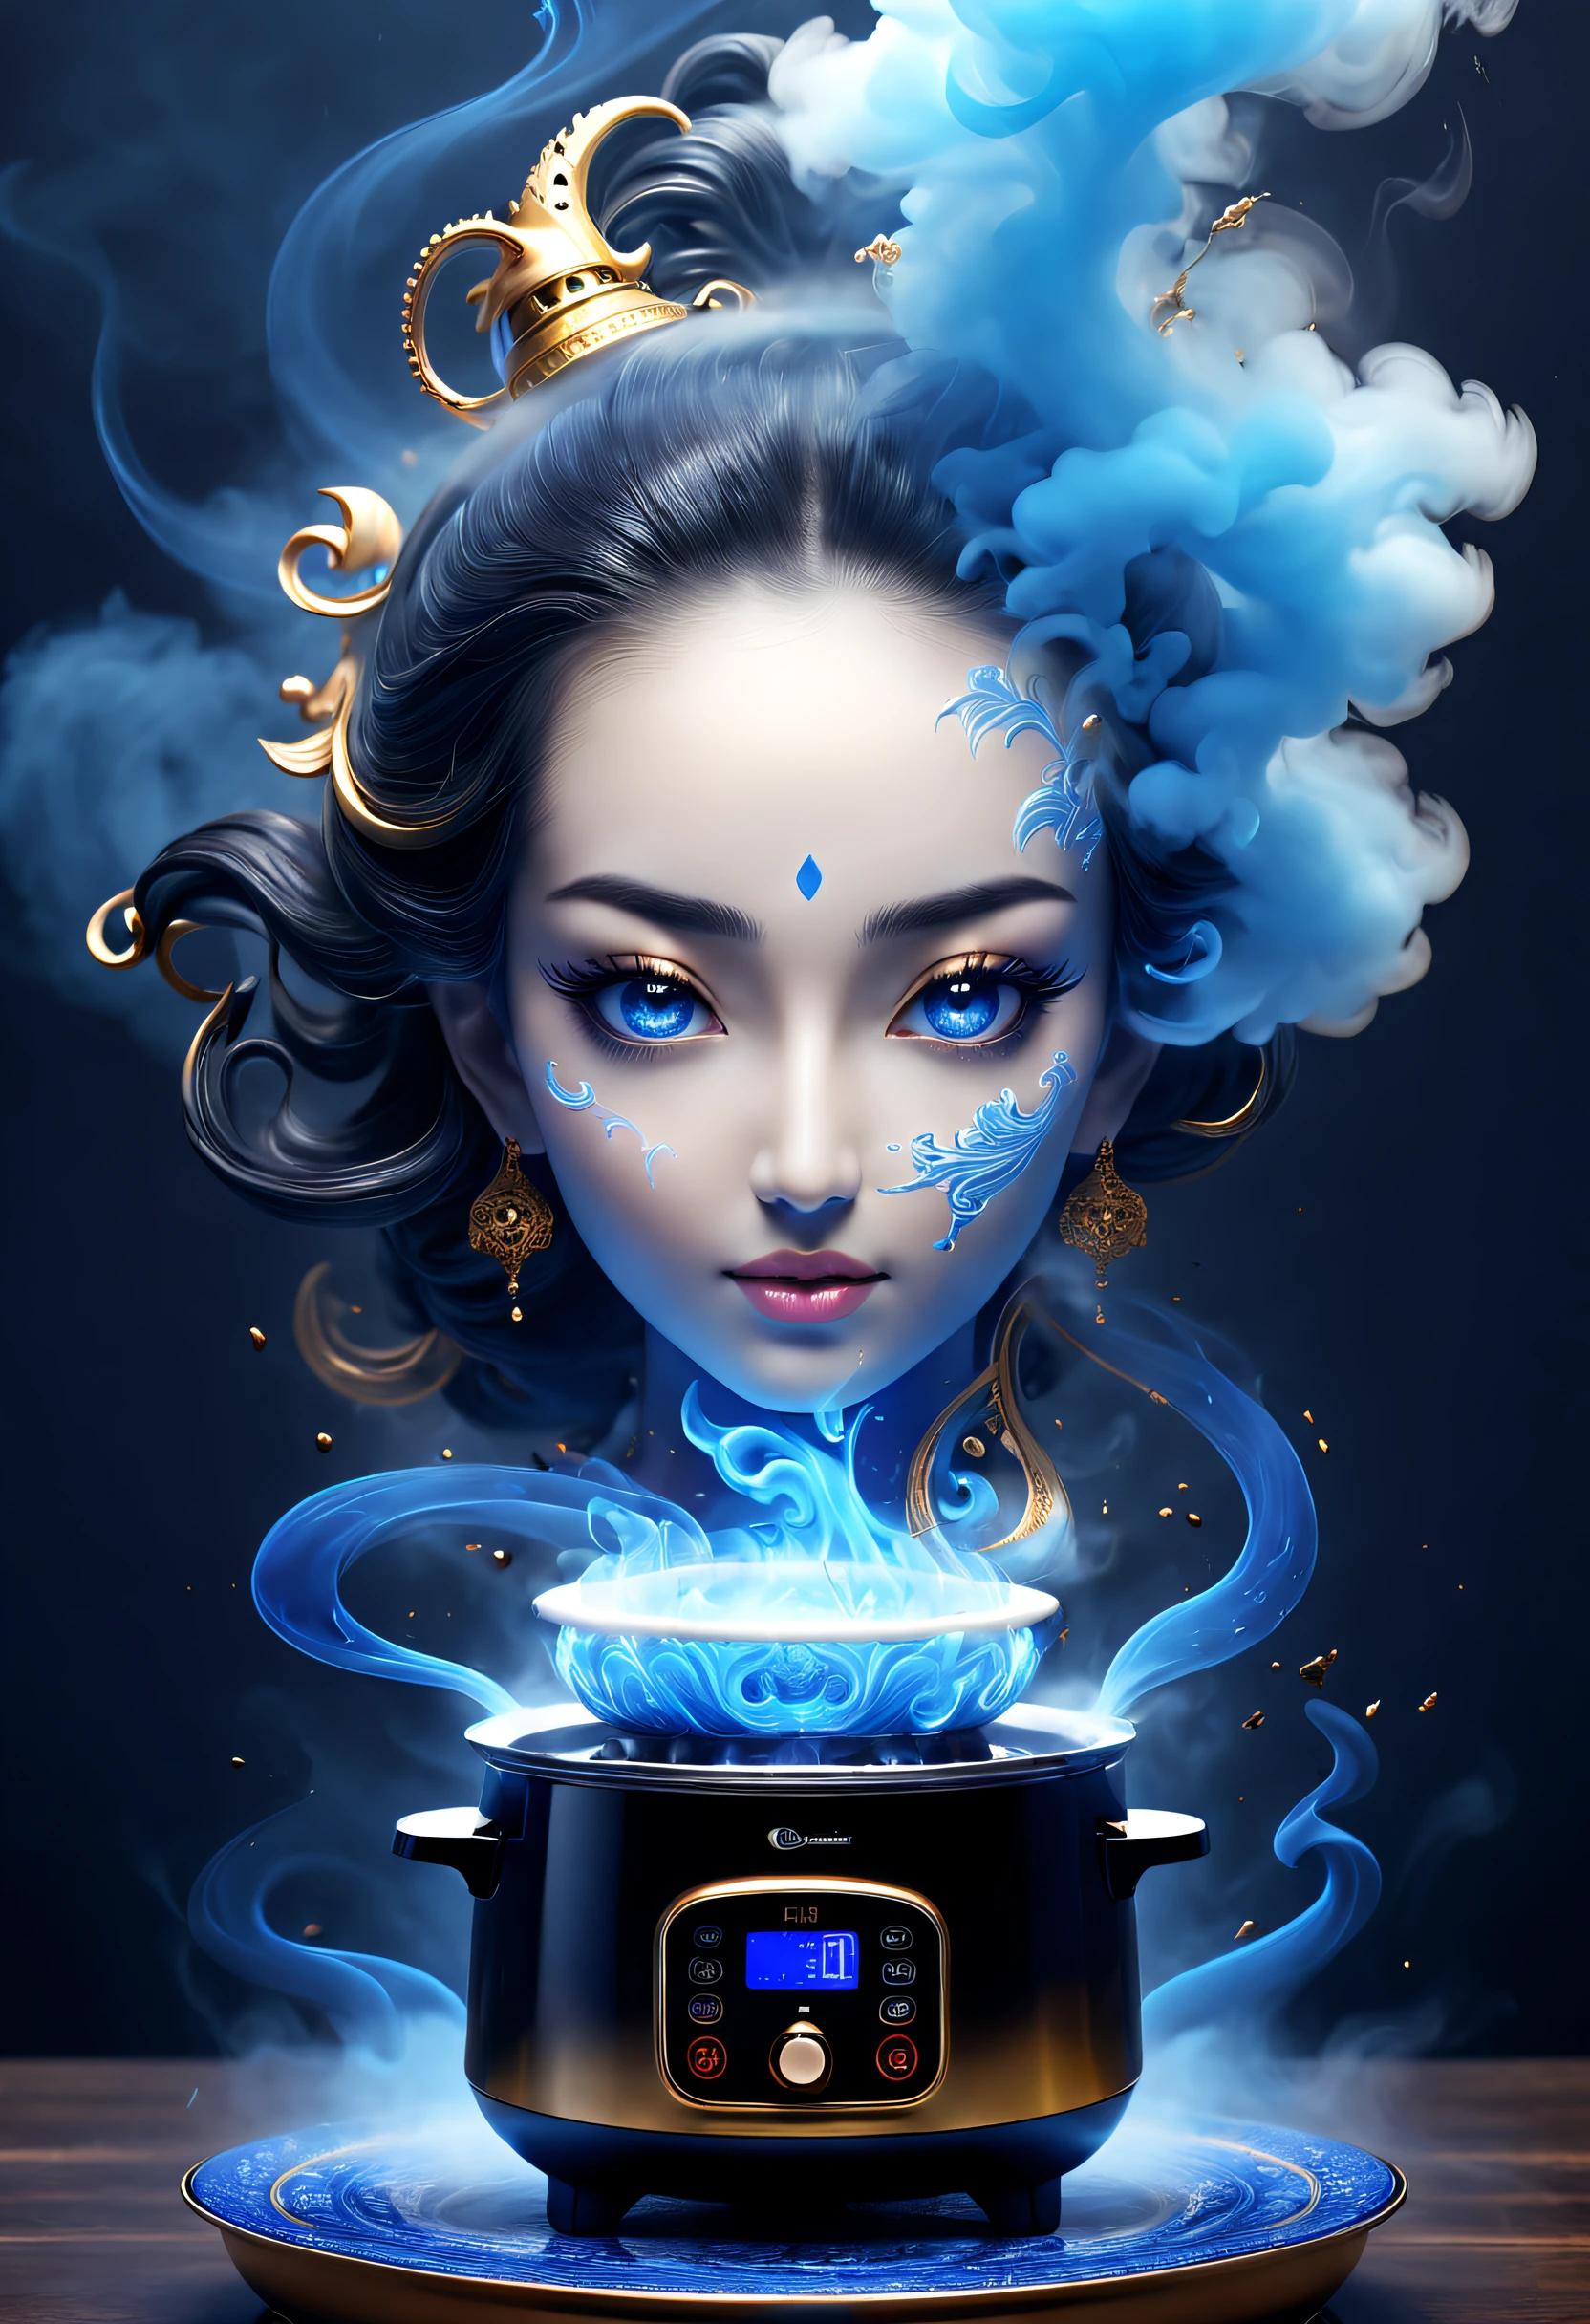 (beste Qualität,4K,8K,Eine hohe Auflösung,Meisterstück:1.2),ultra-detailliert,Aus einem AI-Reiskocher kommt geheimnisvoller blauer Rauch,Transparenter Göttinnenkopf aus blauem Rauch,Inspiriert von Tausendundeiner Nacht,Inspiriert von Aladdin&#39;s Wunderlampe,Küchenhintergrund,Science-Fiction-Kunst,Exzellent,wunderbares märchen,hyper realisitc,Mythischer Film，abstrahiert，stilisiert